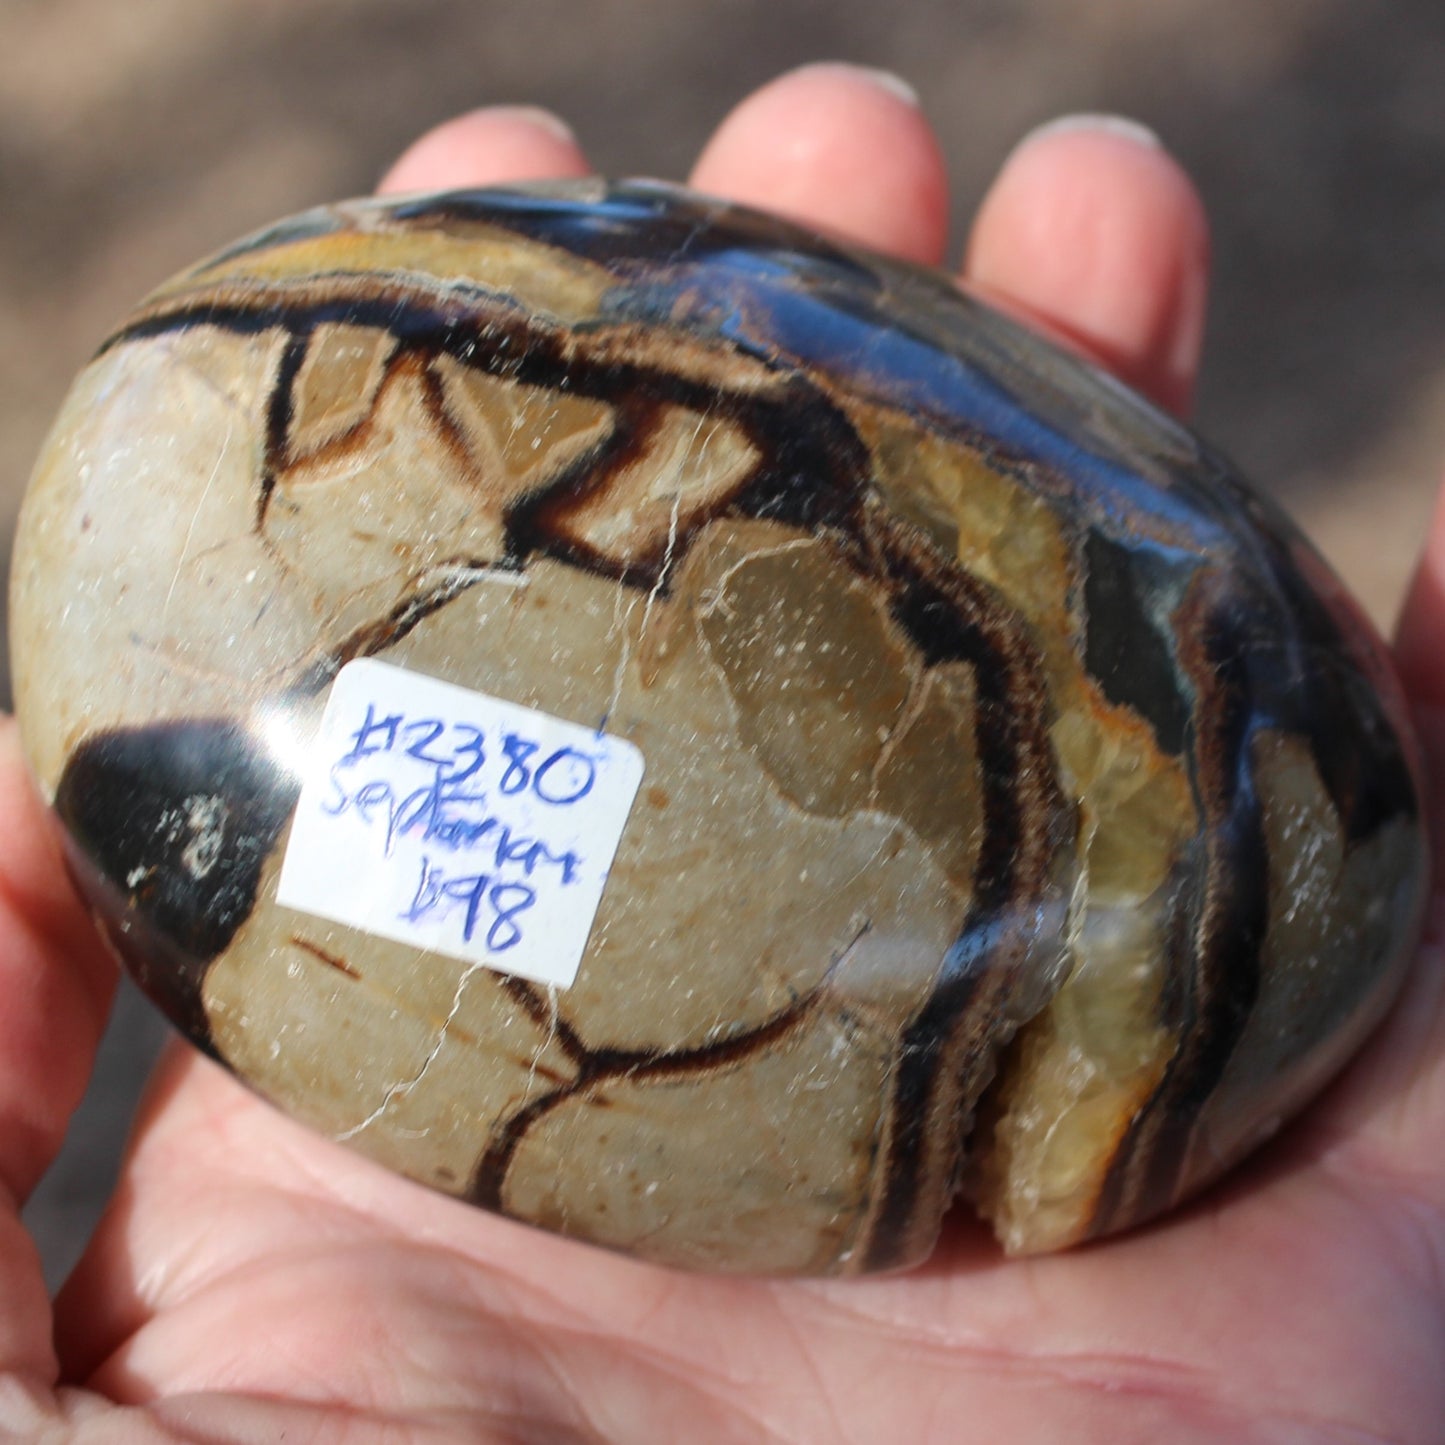 Septarian Dragon Stone geode egg 392g